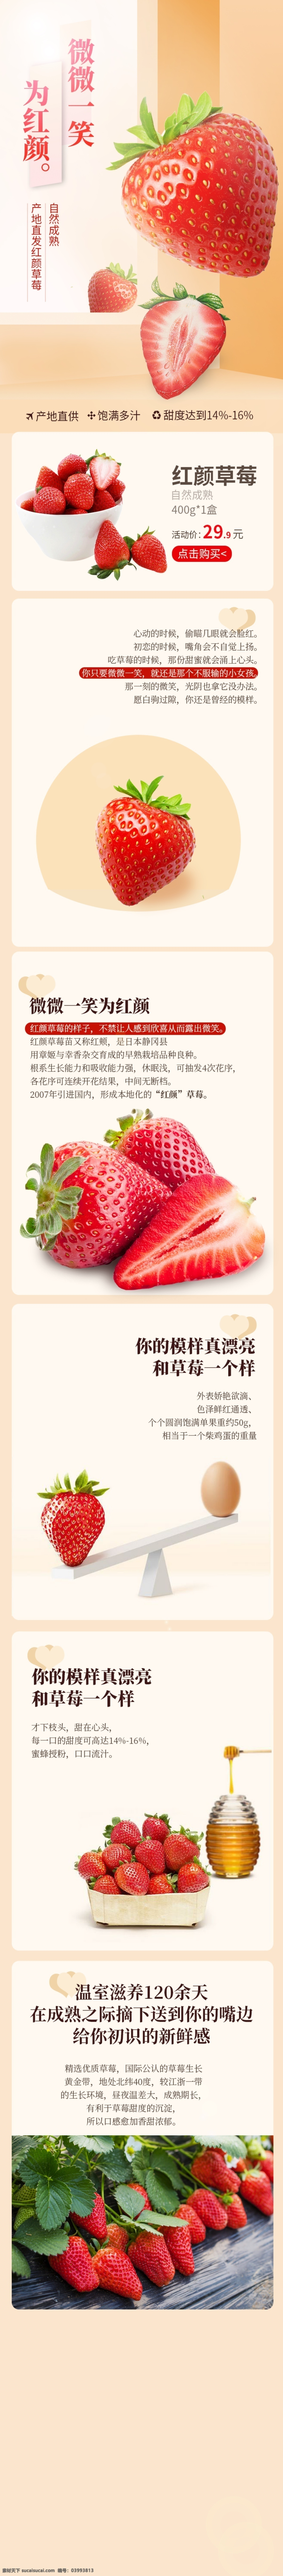 电商 淘宝 京东 天猫 草莓 水果 生鲜 详情 页 详情页 电商淘宝